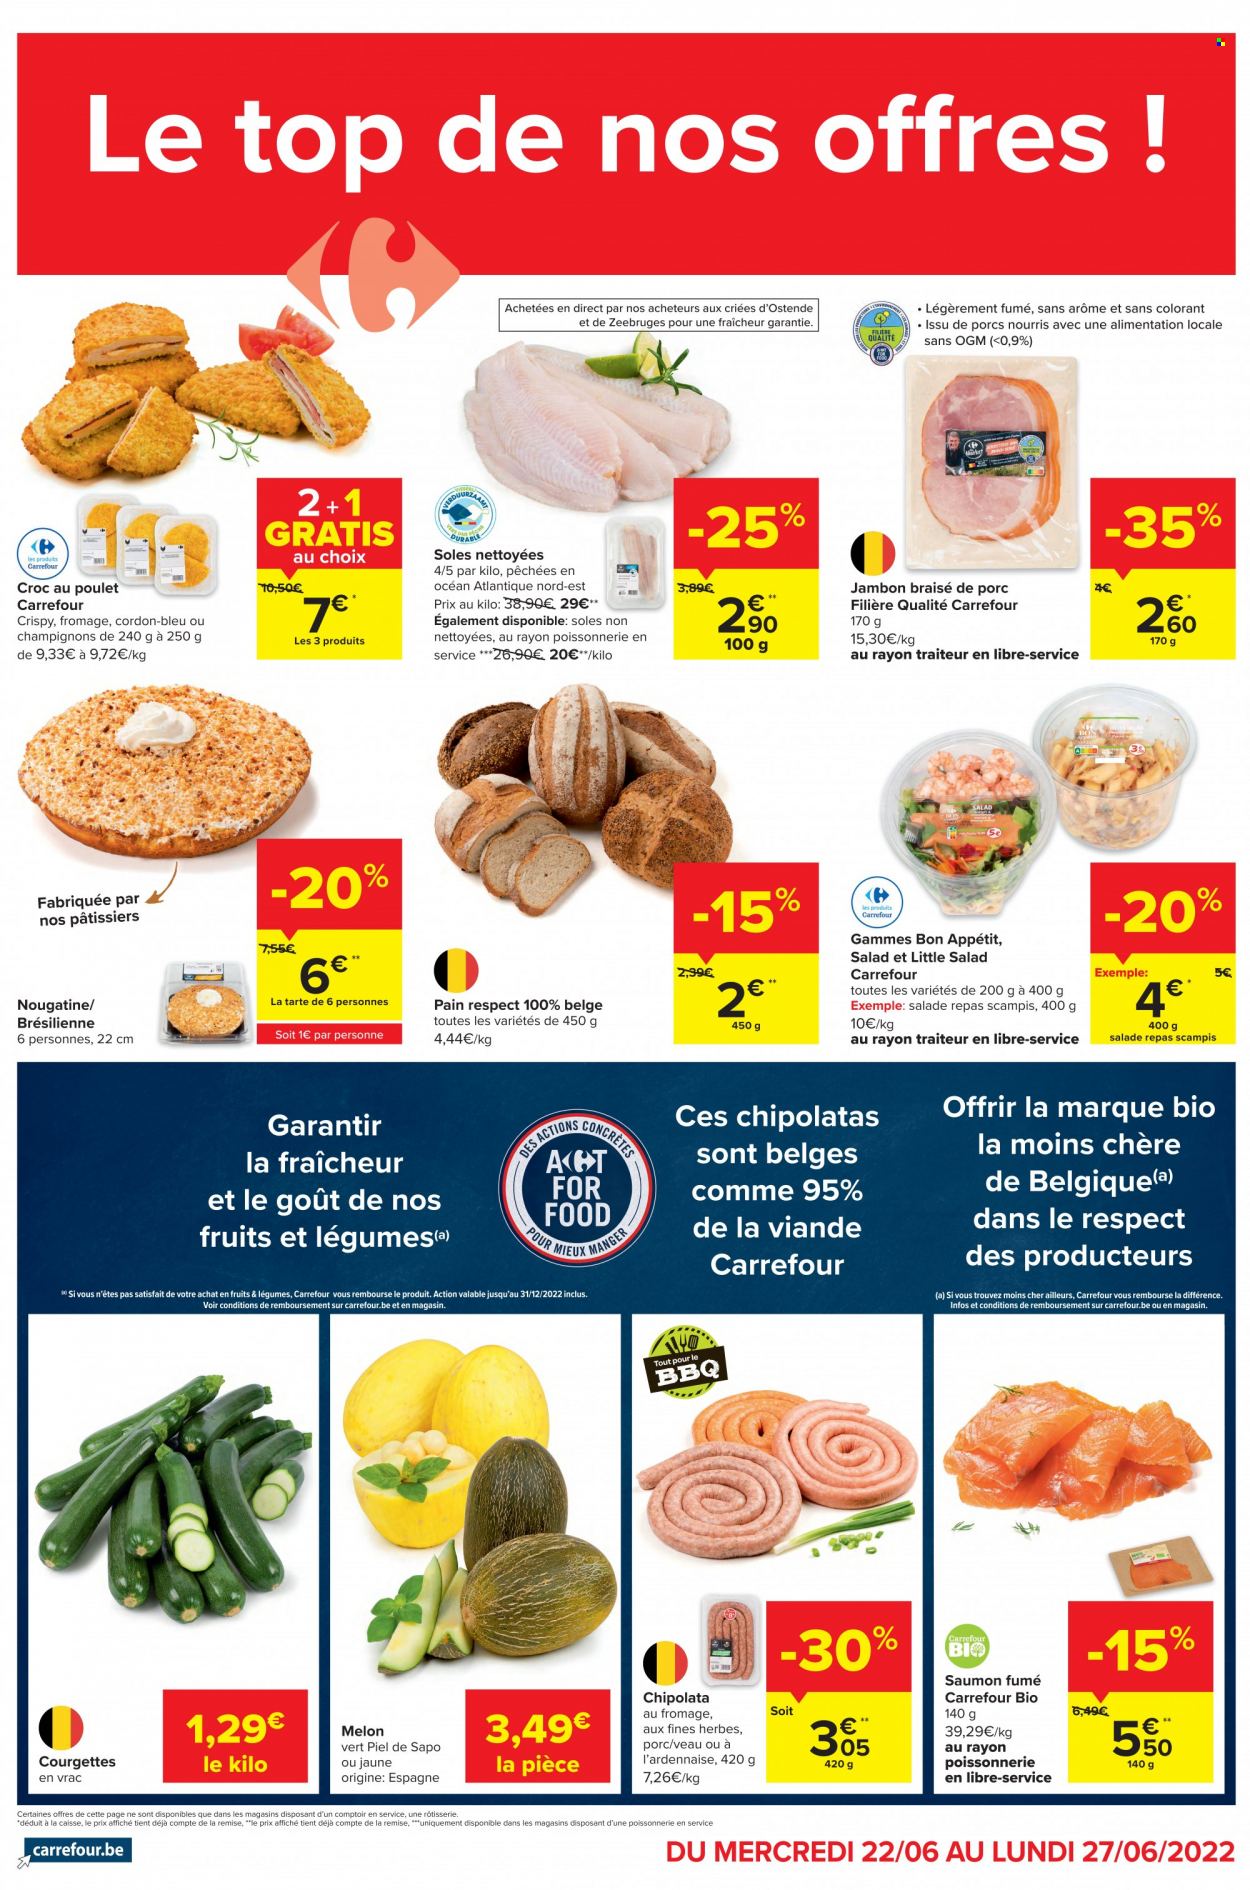 Carrefour-aanbieding - 22.6.2022 - 27.6.2022 -  producten in de aanbieding - champignons, Piel de Sapo meloen, chipolataworstjes, top. Pagina 2.